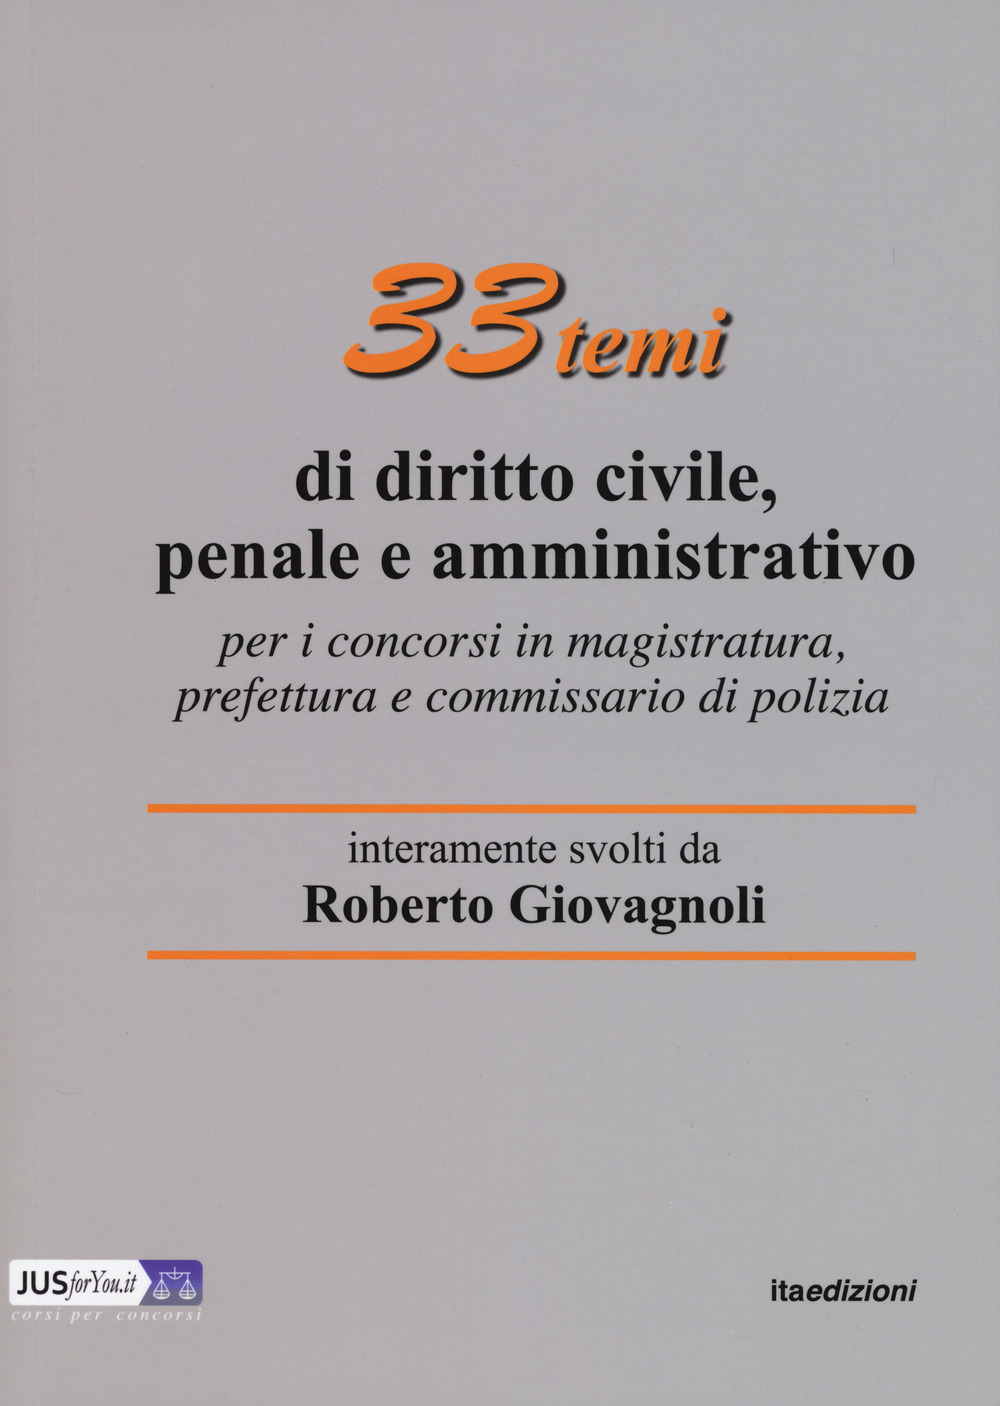 33 temi di diritto civile, penale e amministrativo per il concorso in magistratura